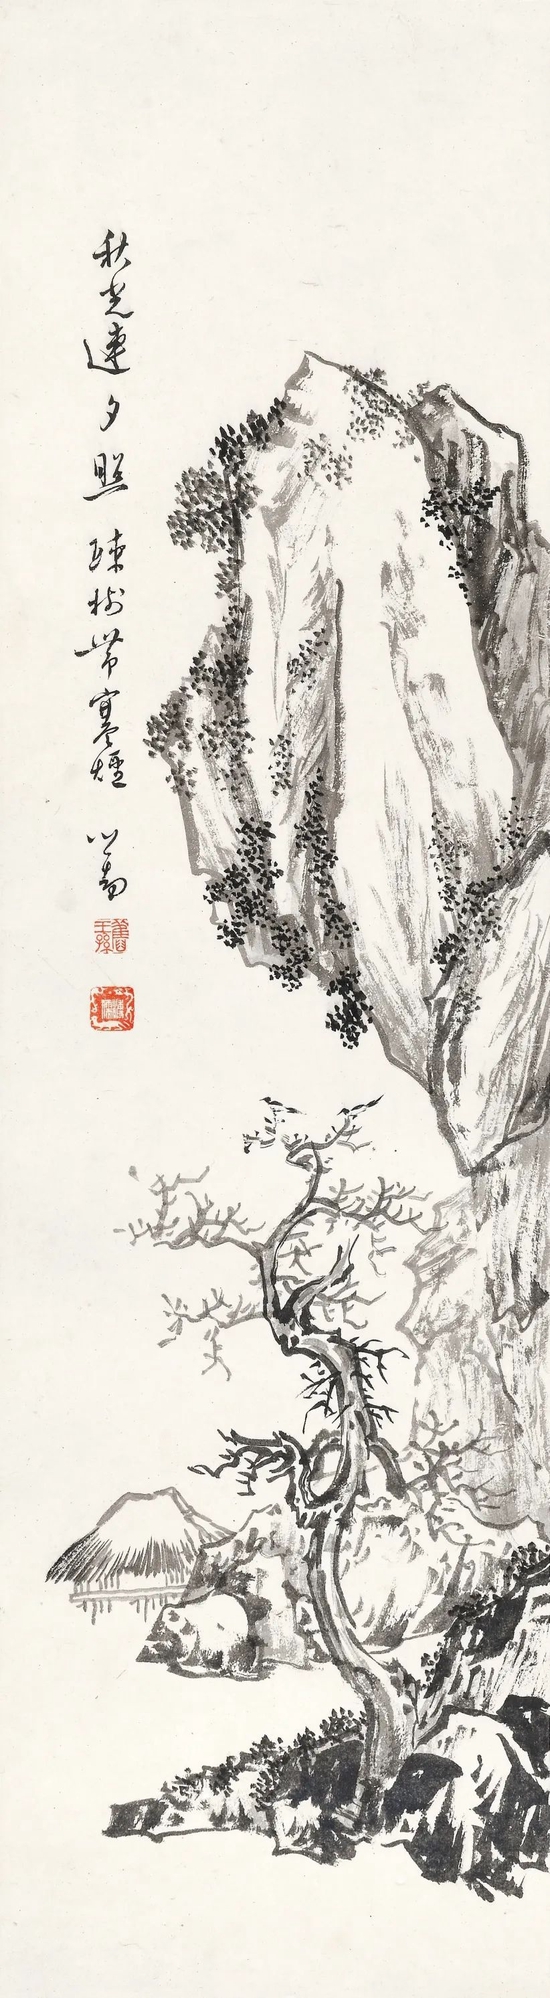 诚轩22春拍中国书画丨溥心畬的笔墨世界